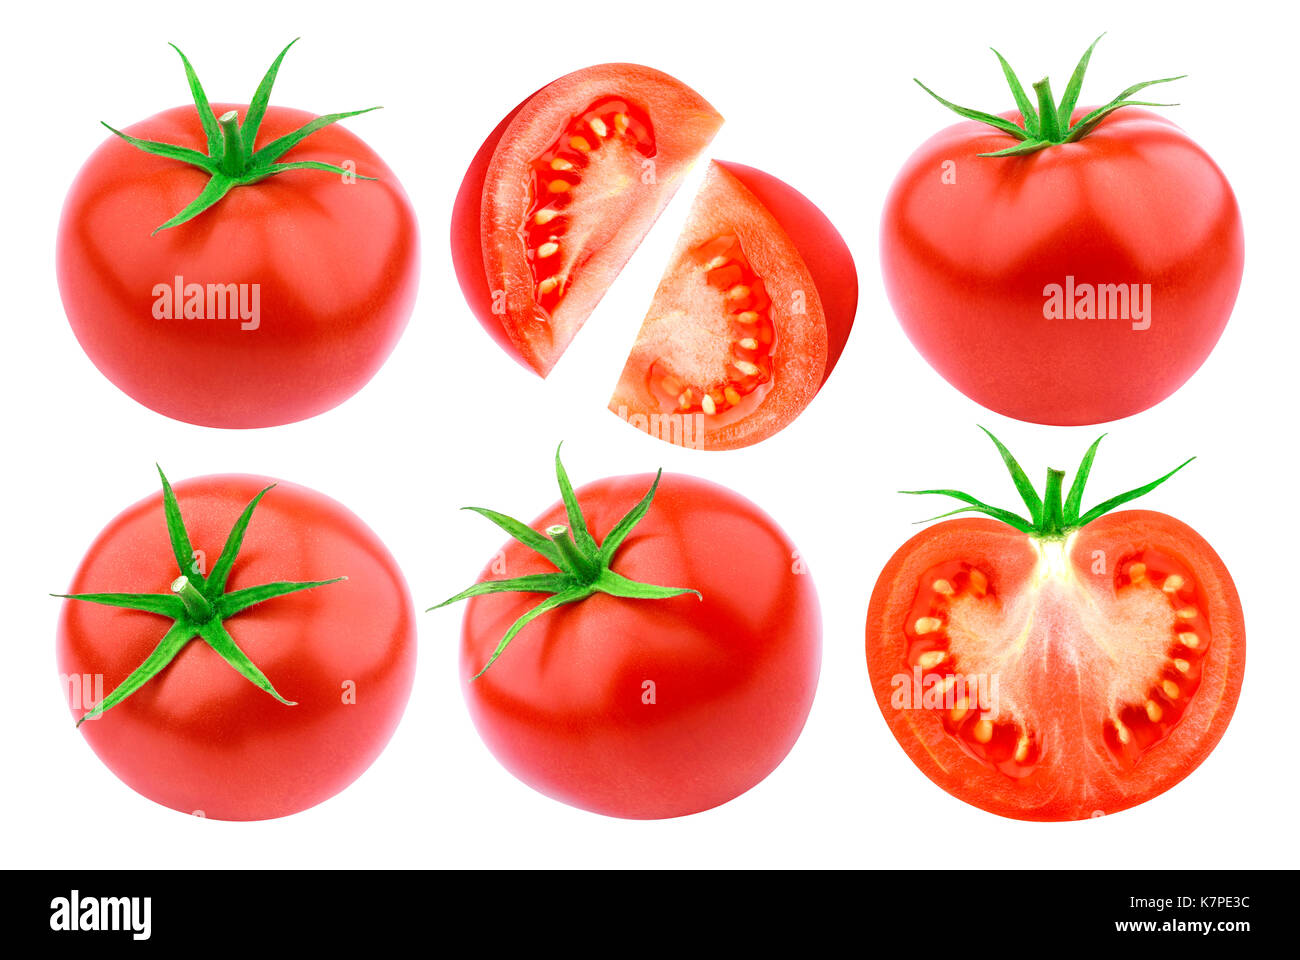 Tomato isolated isolated on white background Stock Photo